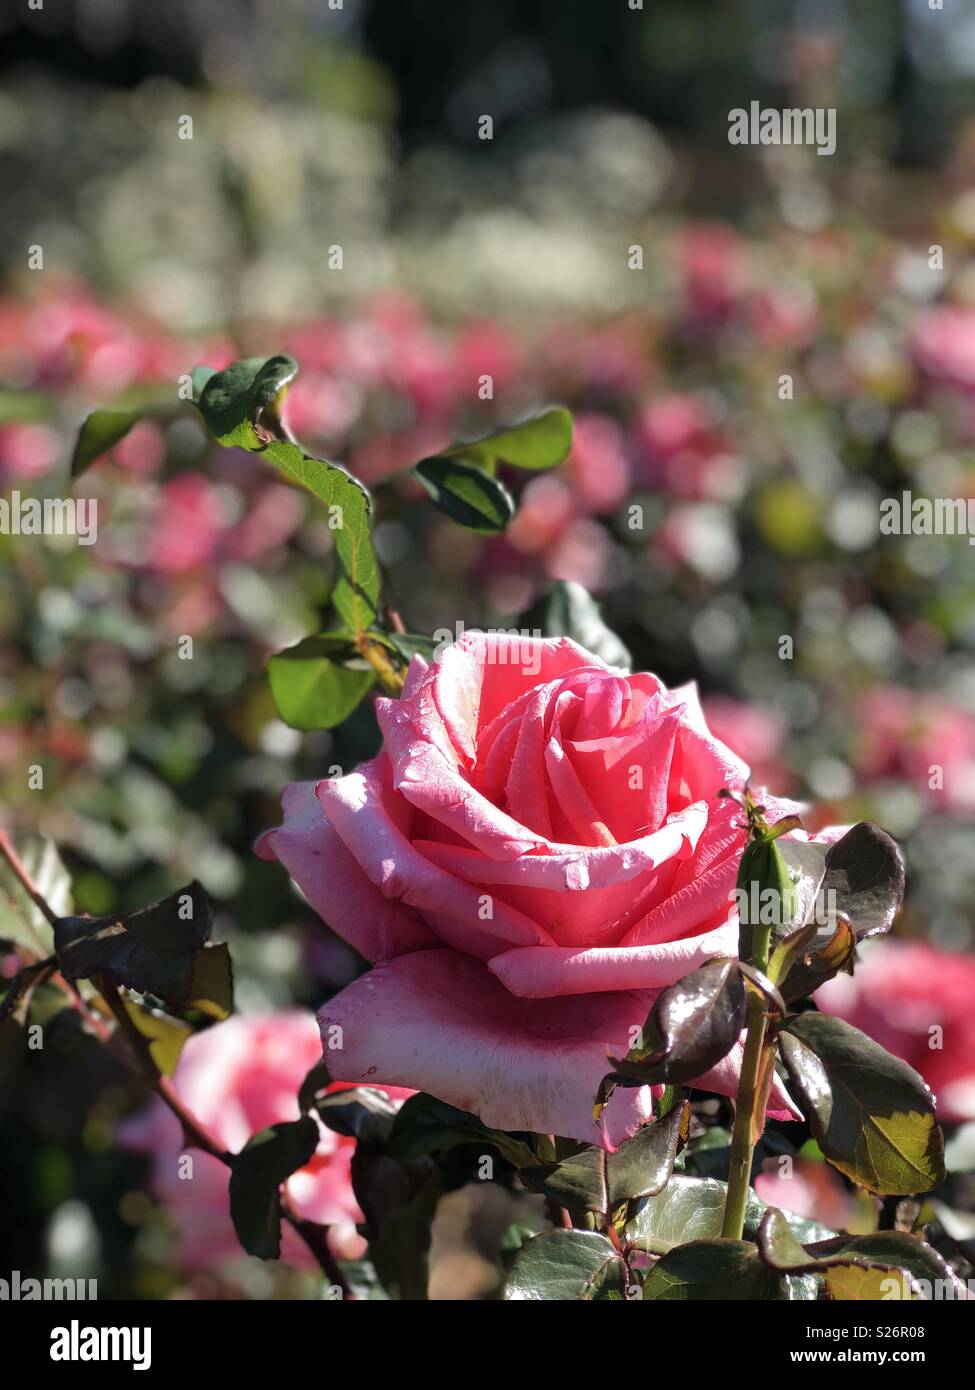 Cerca de una rosa rosa vivo en un arbusto, rodada en modo retrato. Foto de stock